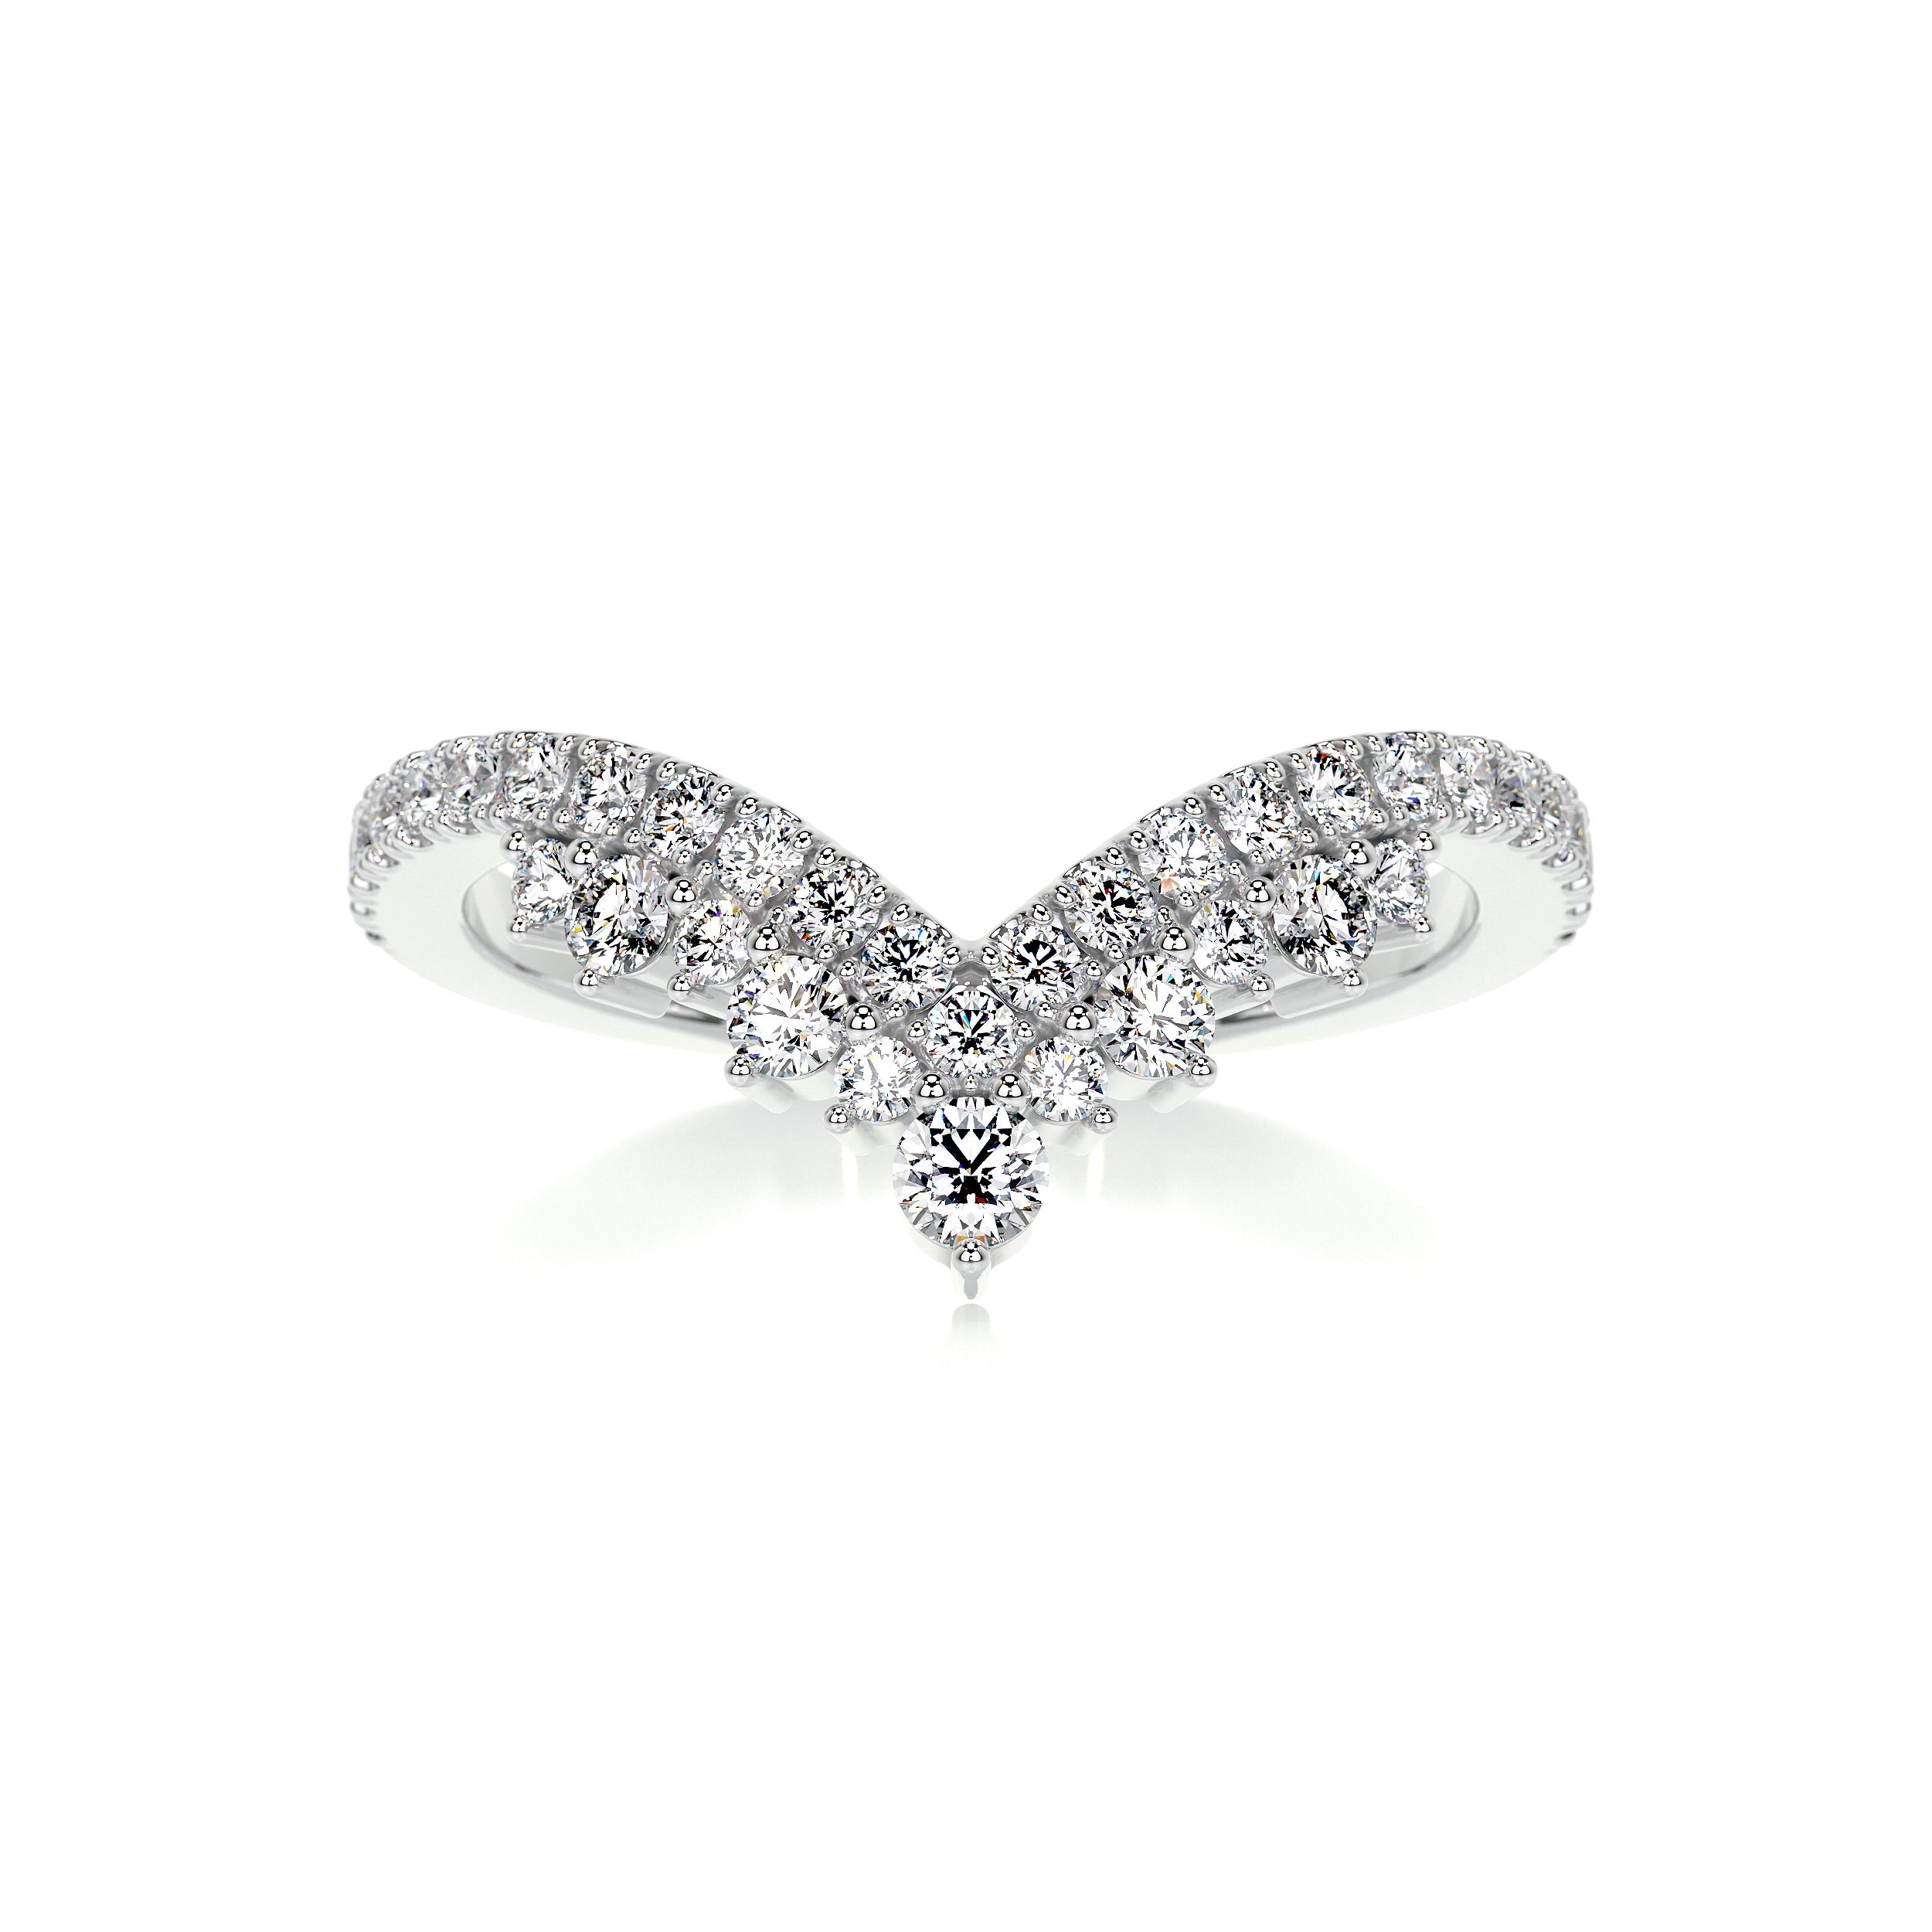 Mia Diamond Wedding Ring   (0.50 Carat) -18K White Gold